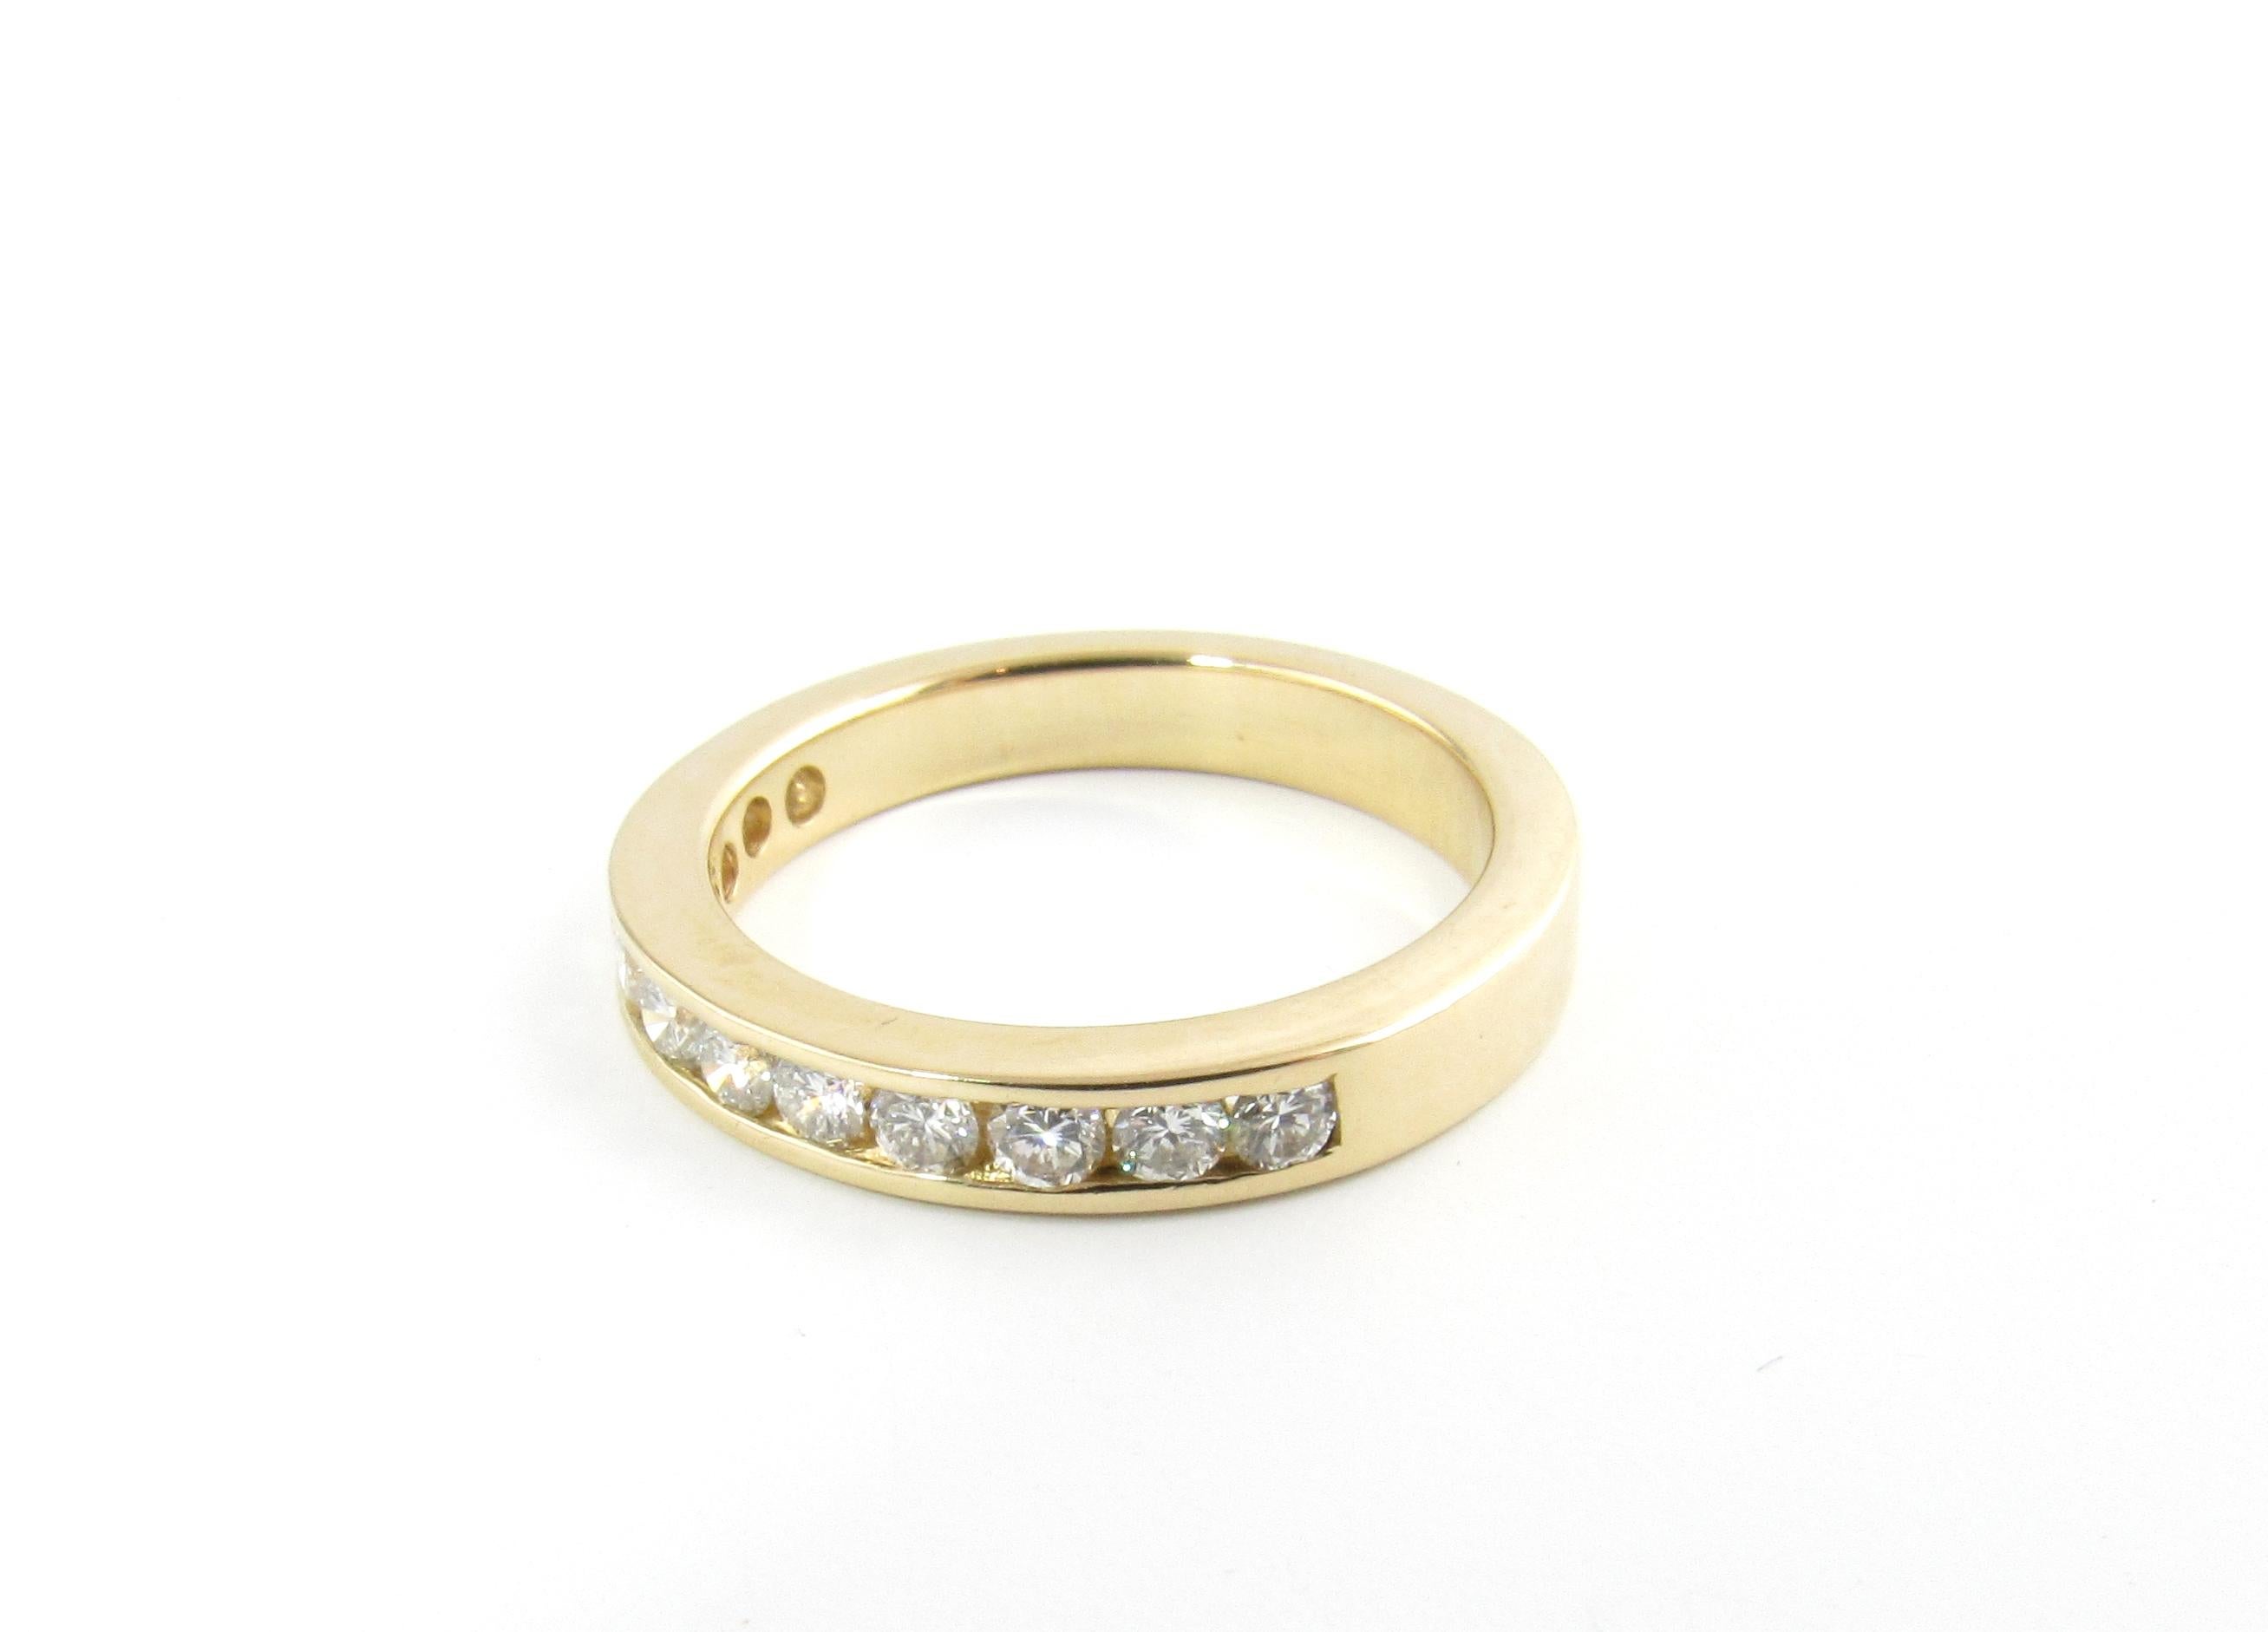 Vieille alliance en or jaune 14 carats avec diamant taille 7.25

Ce bracelet étincelant présente 13 diamants ronds de taille brillante sertis dans de l'or jaune 14K classique. Largeur : 3 mm.

Poids approximatif des diamants : 0,48 ct.

Couleur du